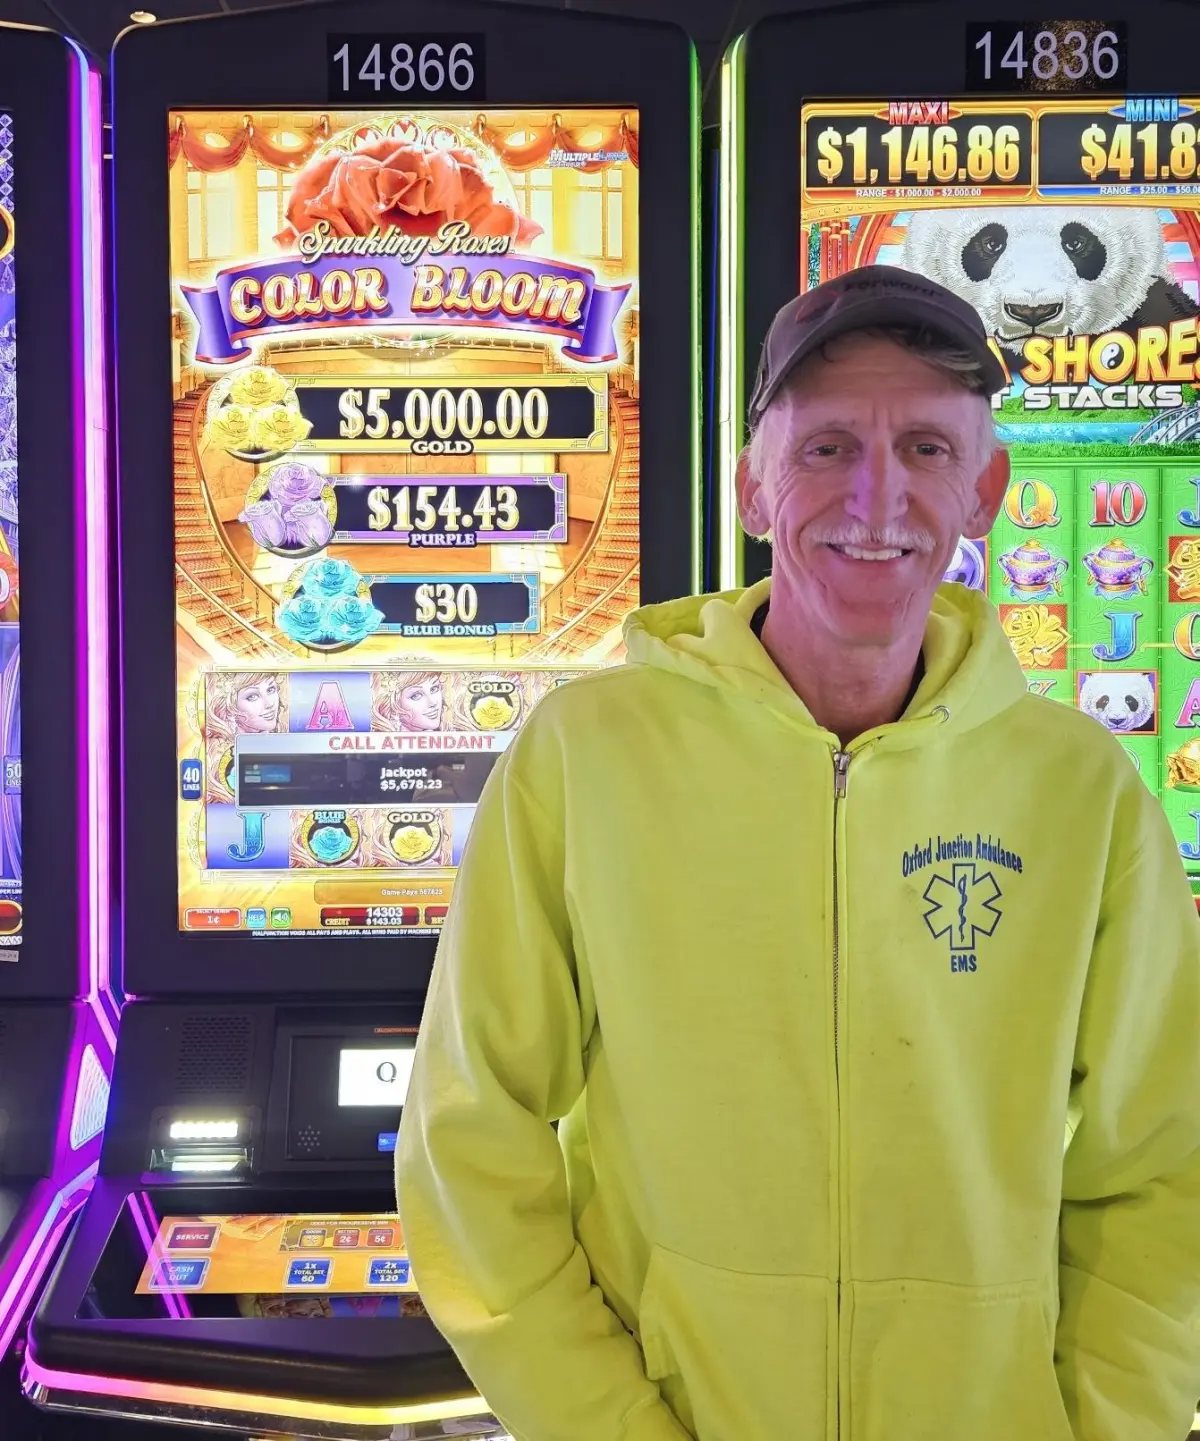 Richard F.  won $5678 playing Sparkling Rose at Q Casino